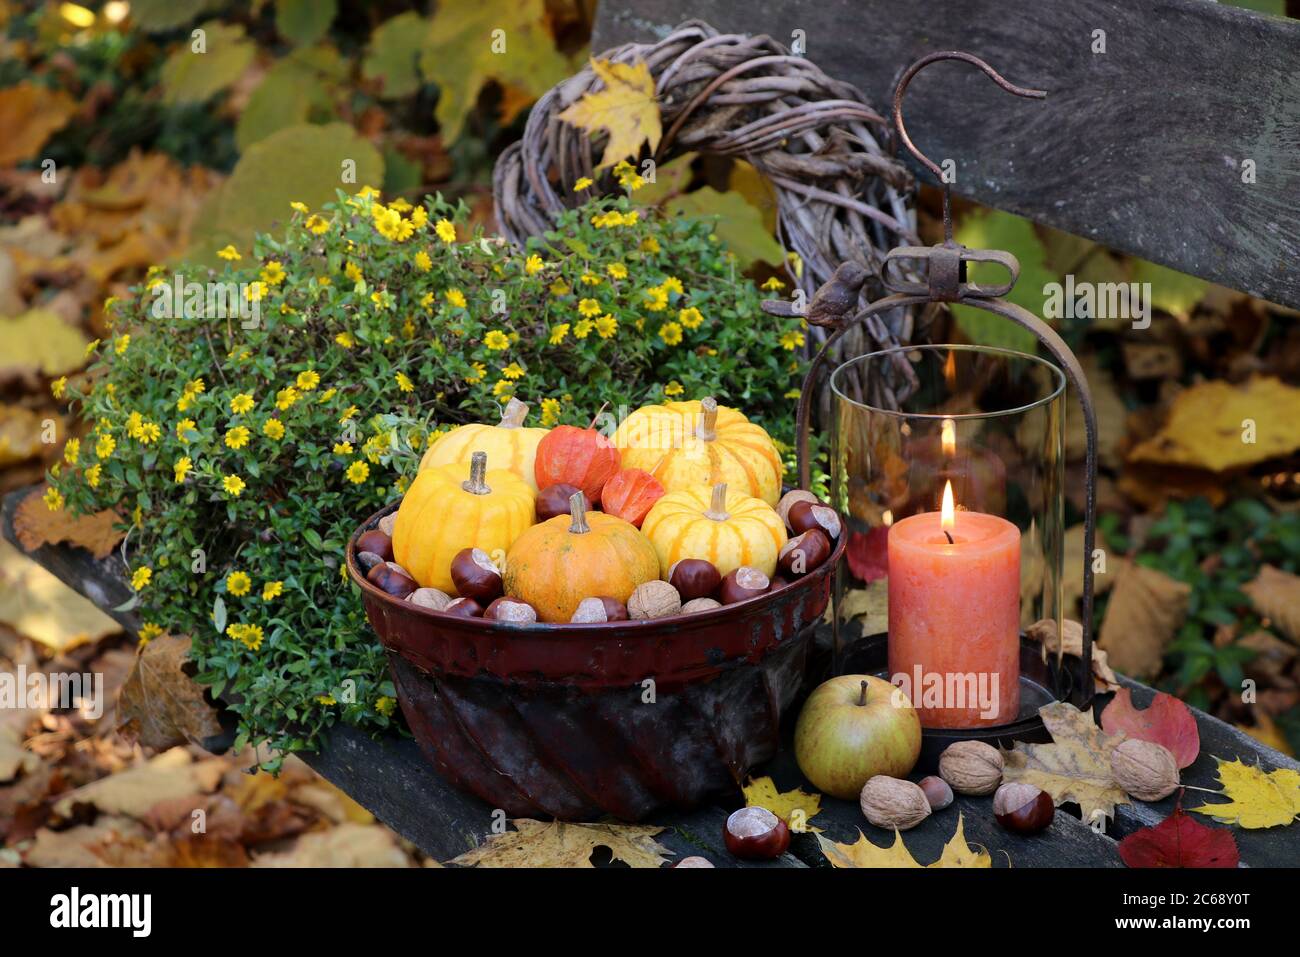 autumn garden decoration with pumpkins in old guglhupf mold, lantern and sanvitalia Stock Photo